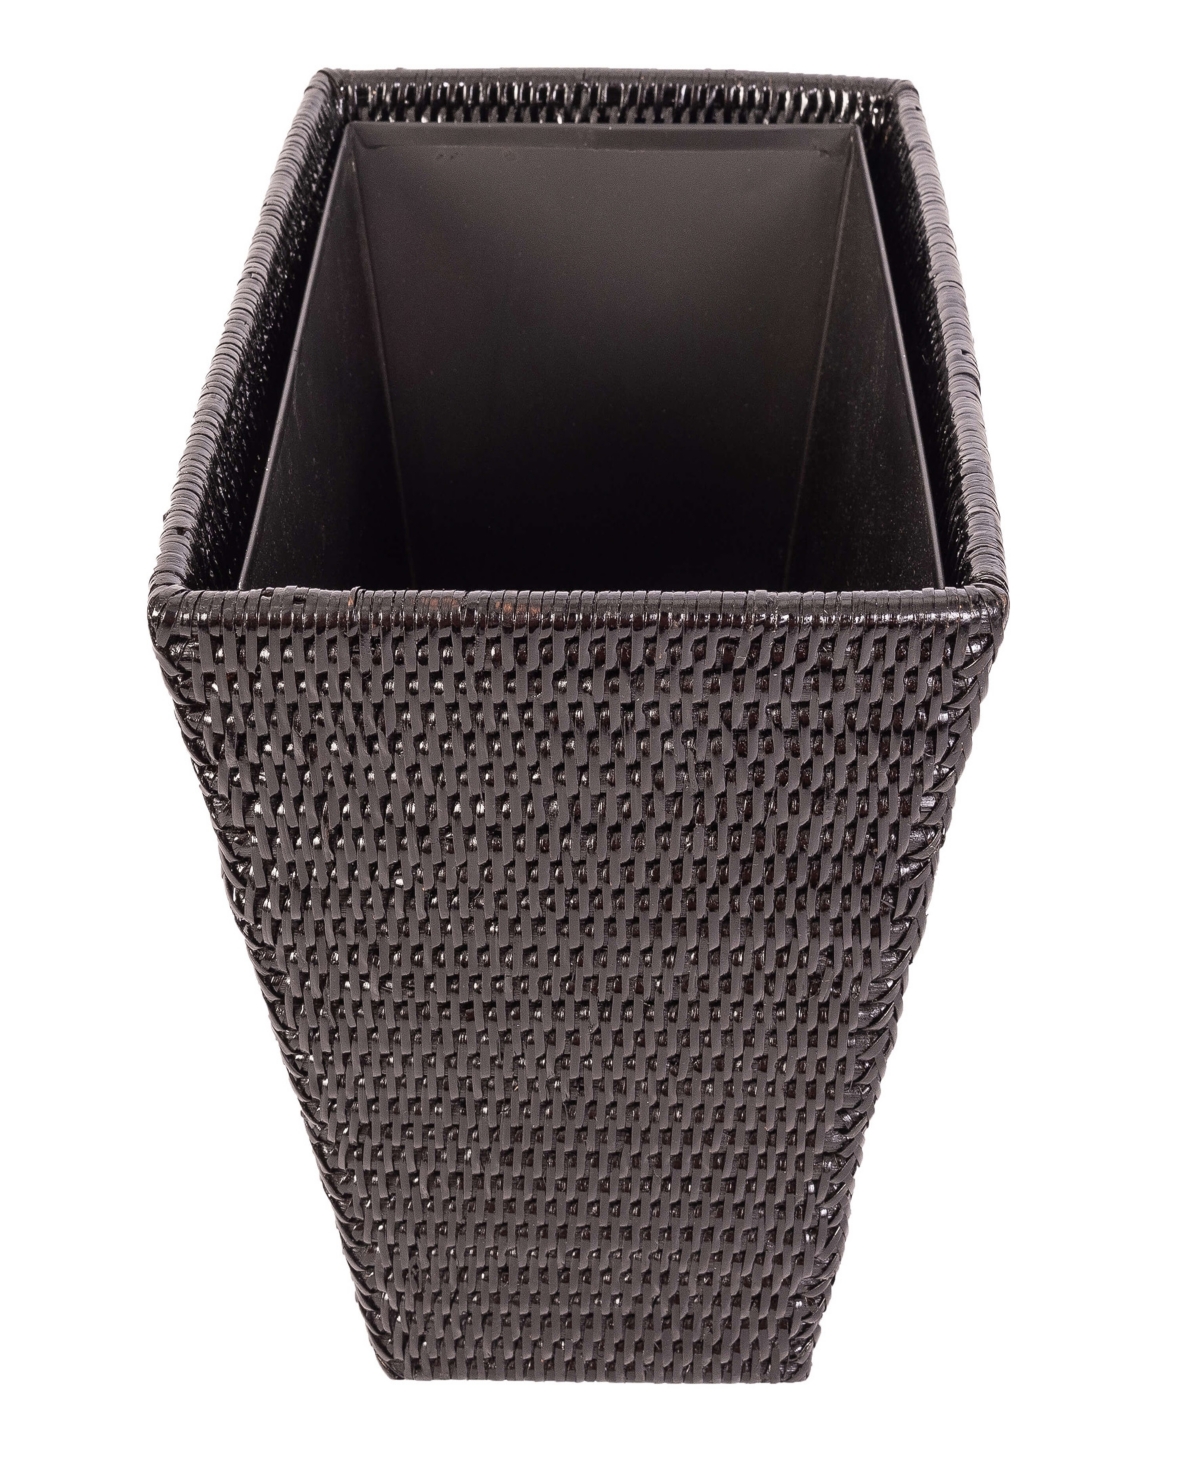 Rattan Rectangular Tapered Waste Basket with Metal Liner - Tudor Black